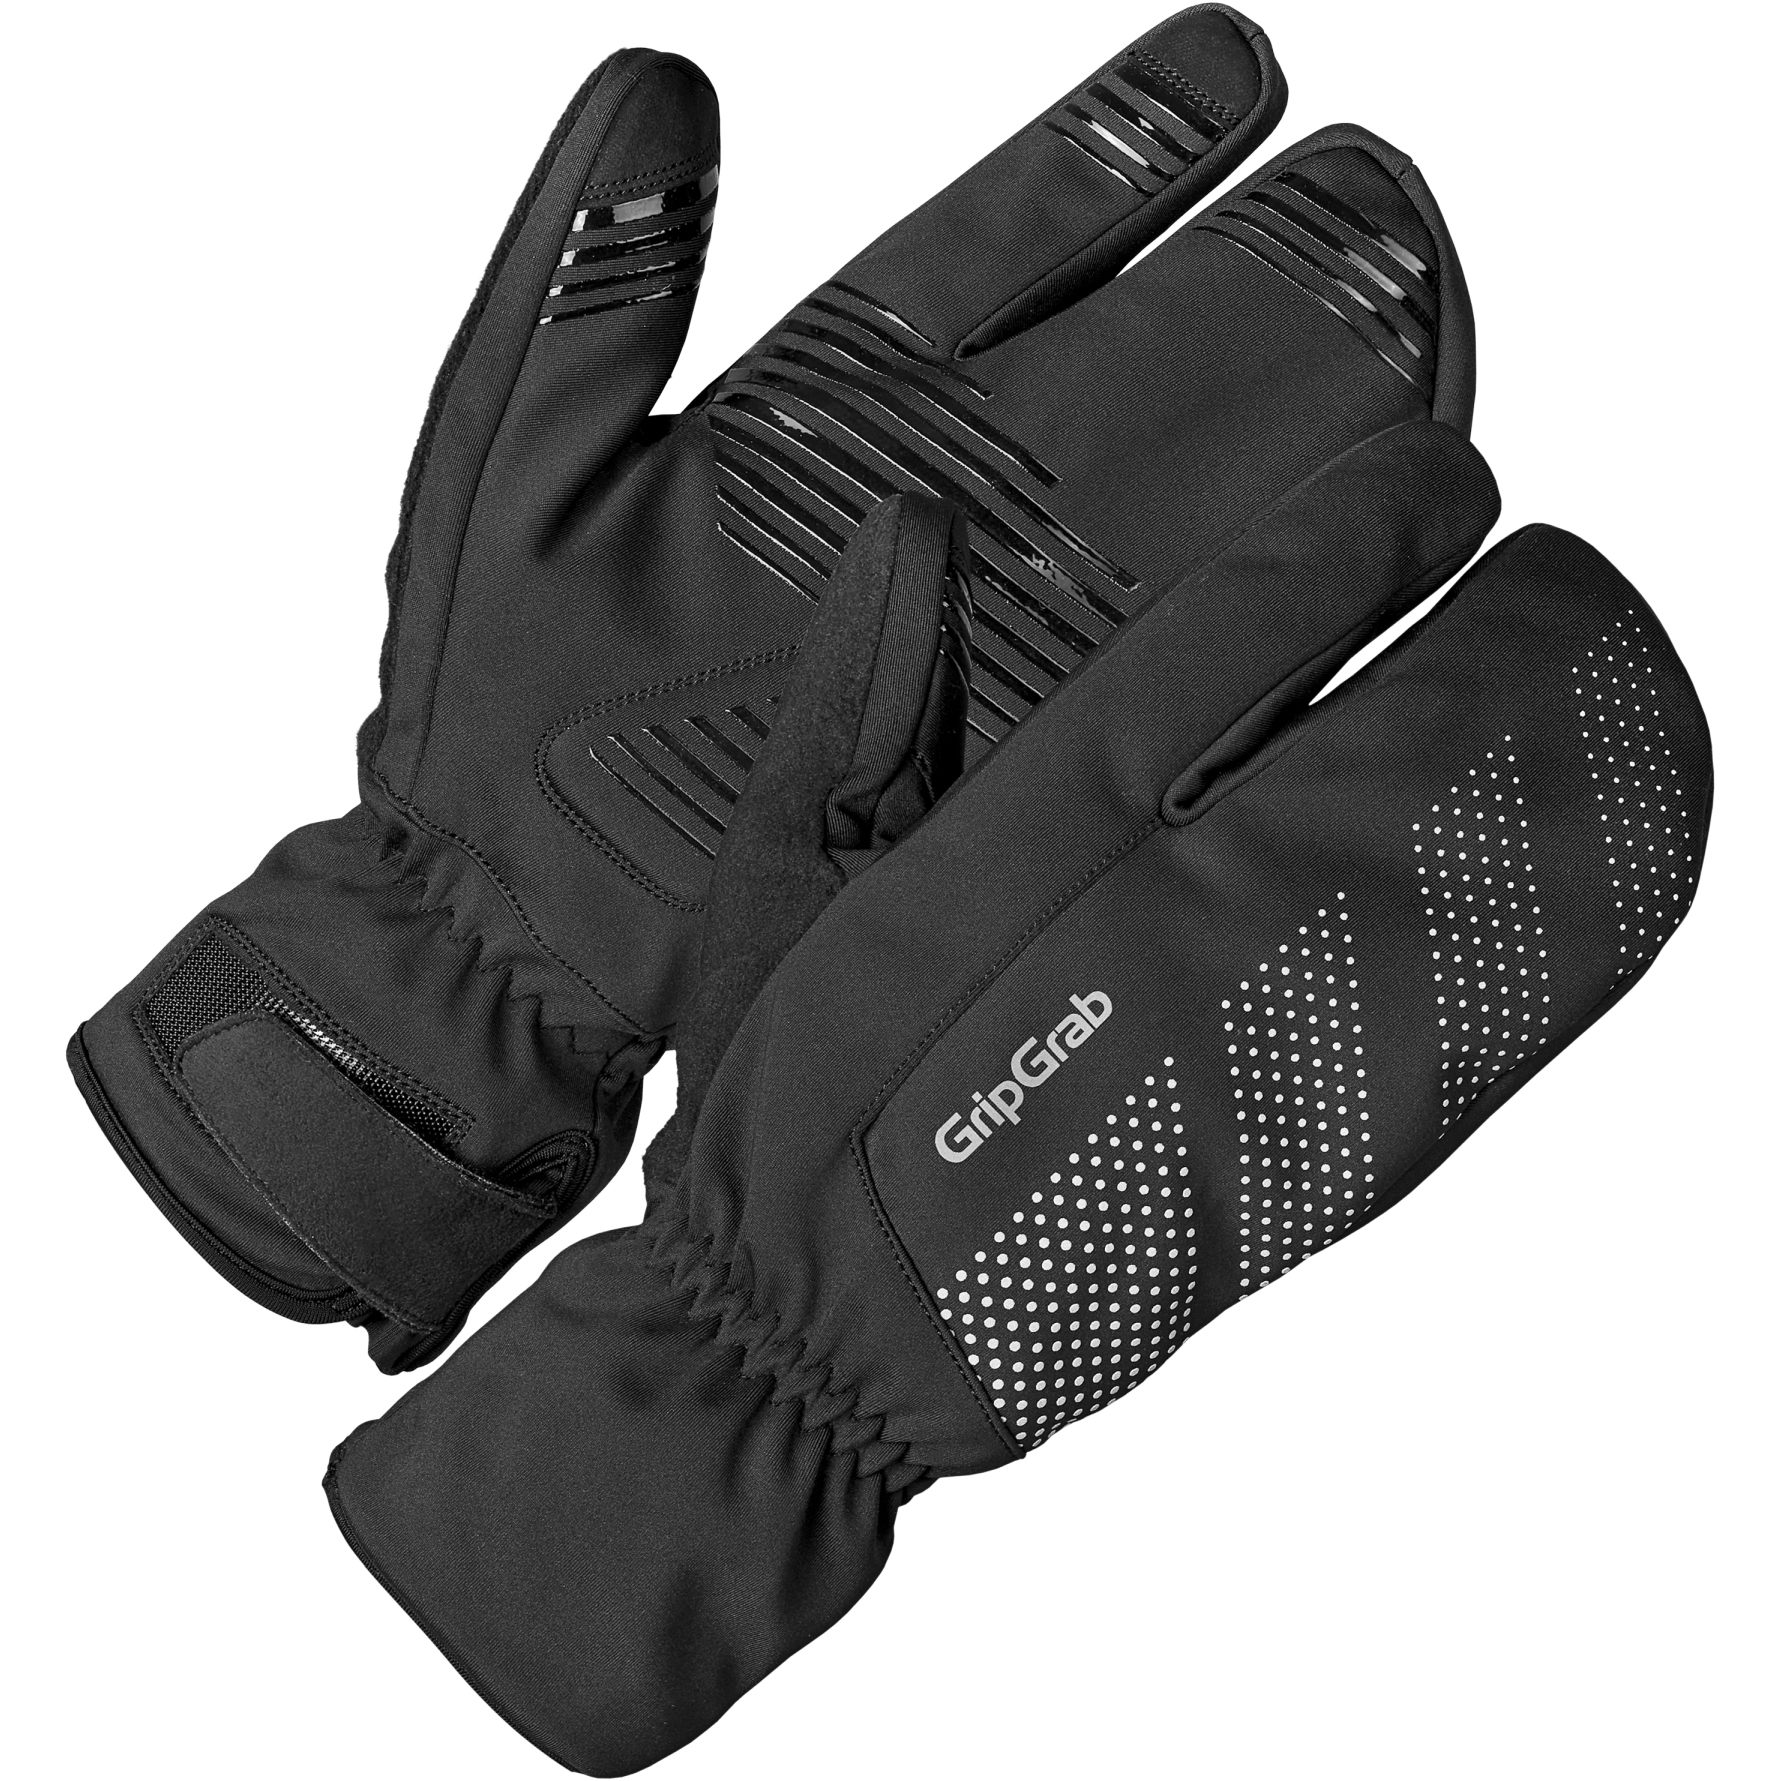 Produktbild von GripGrab Ride Winddichte Deep Winter Lobster Handschuhe - schwarz